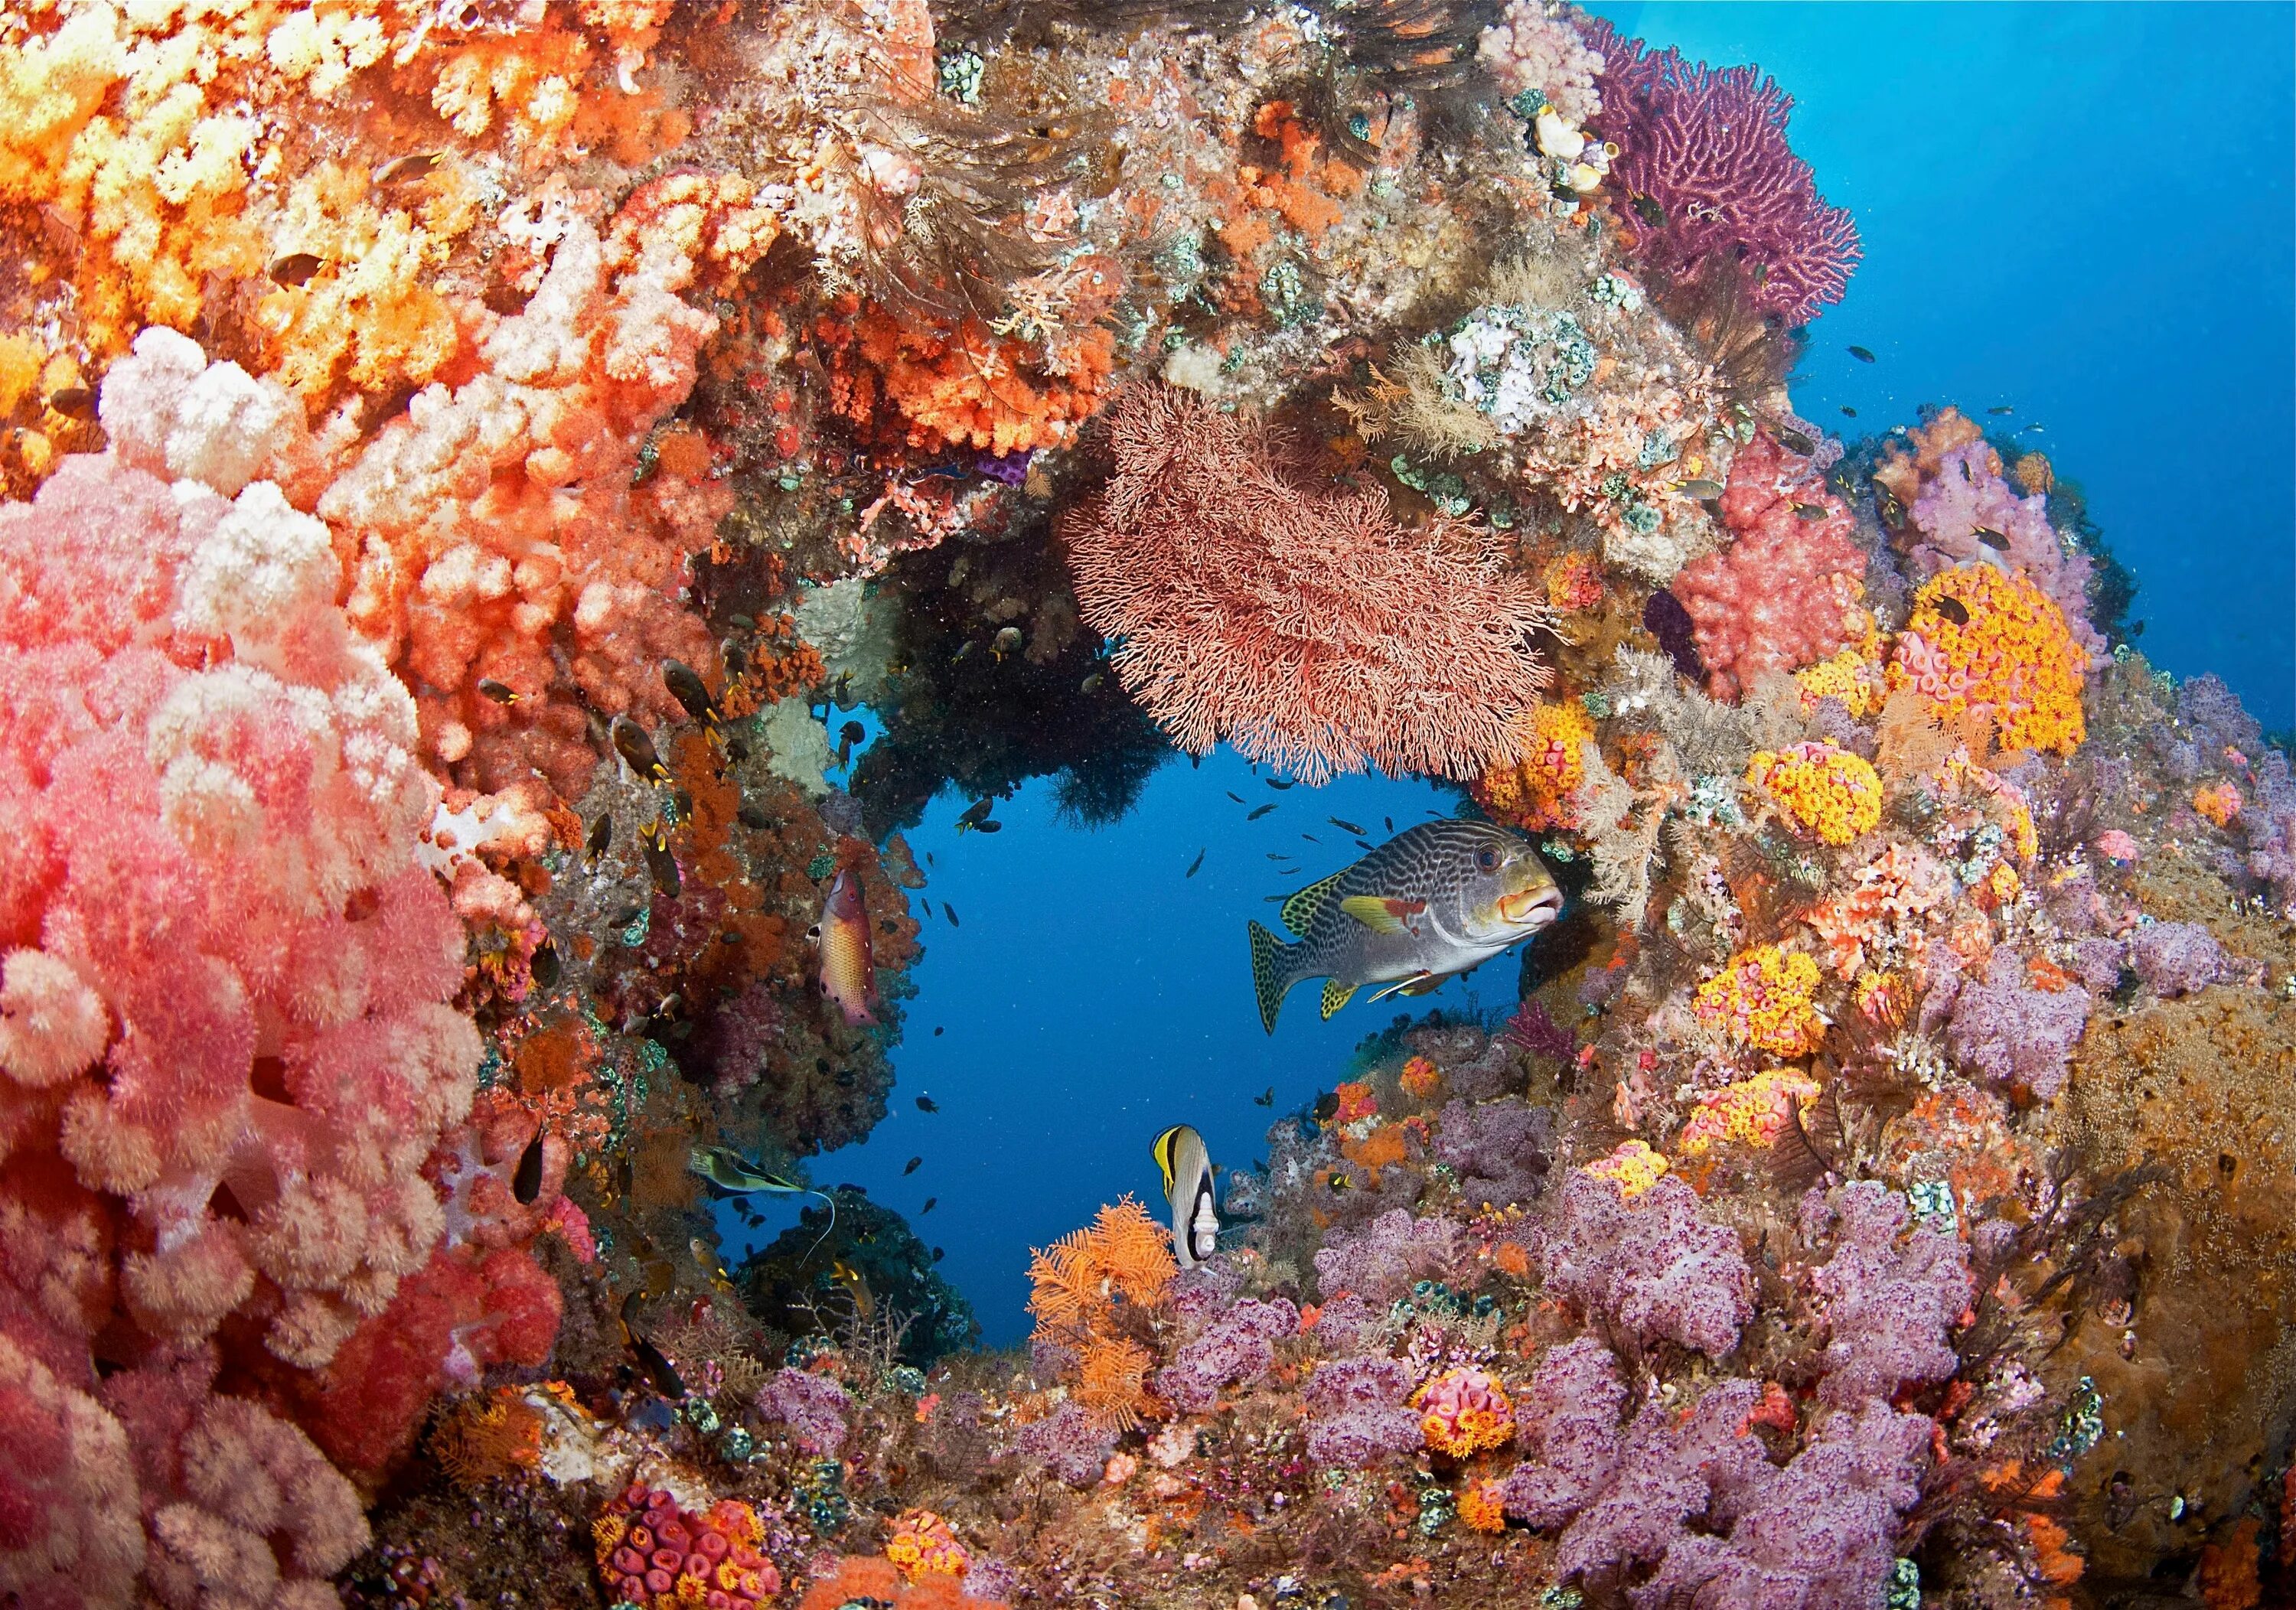 The coral has. Крылатка рыба Шарм Эль Шейх. Раджа-Ампат рифы. Коралловое море Барьерный риф. Коралловый риф в Шарм Эль Шейхе.